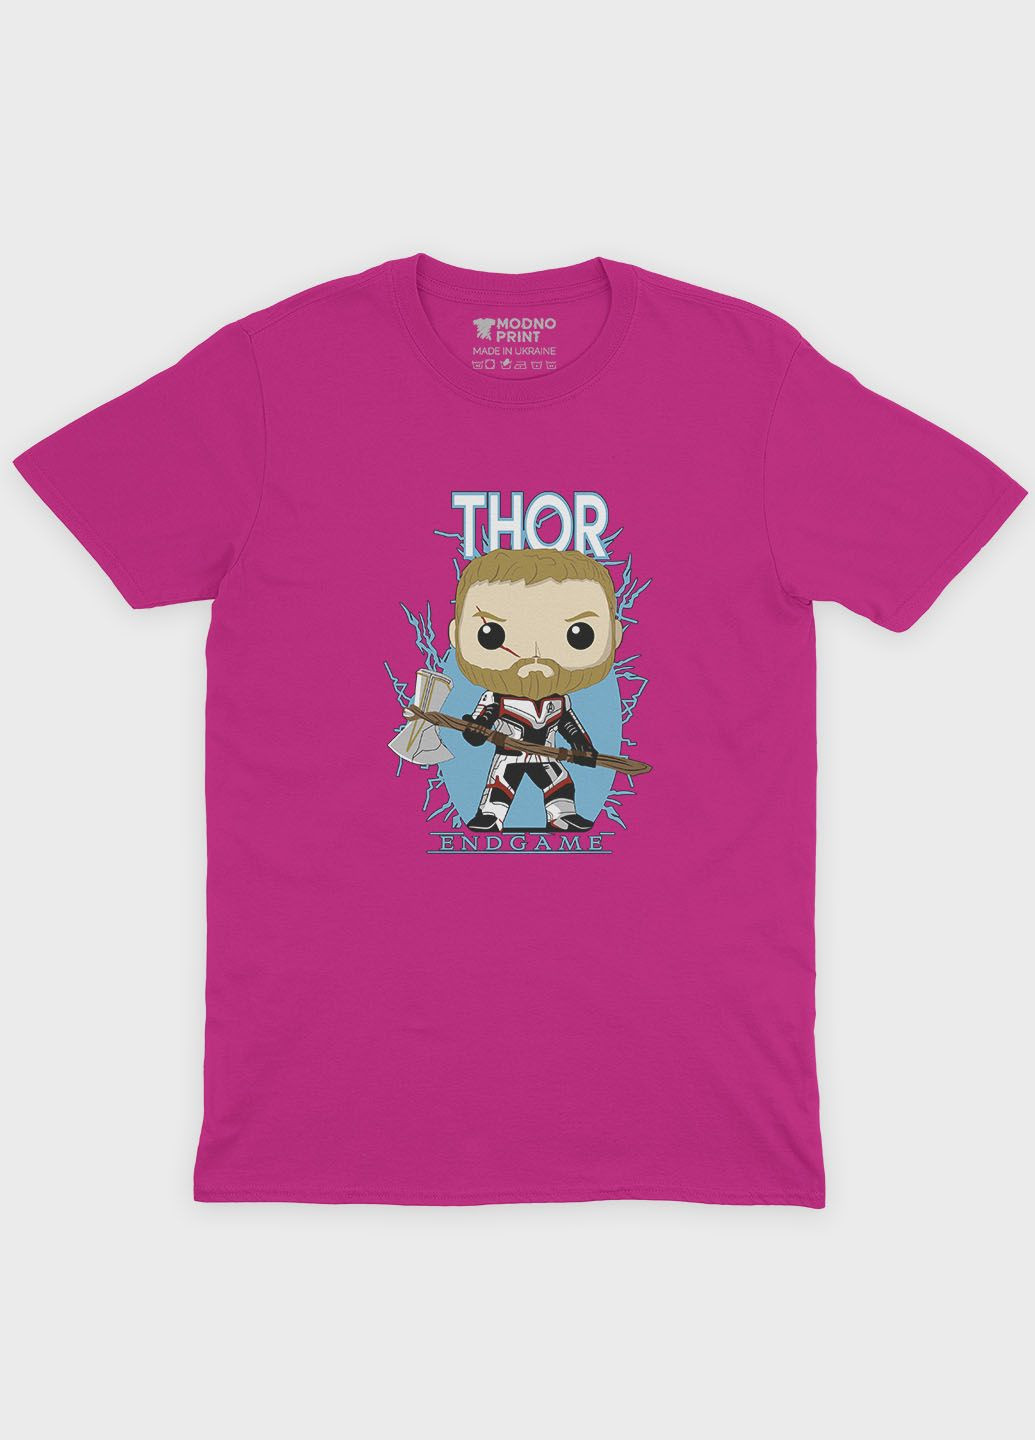 Розовая демисезонная футболка для девочки с принтом супергероя - тор (ts001-1-fuxj-006-024-004-g) Modno